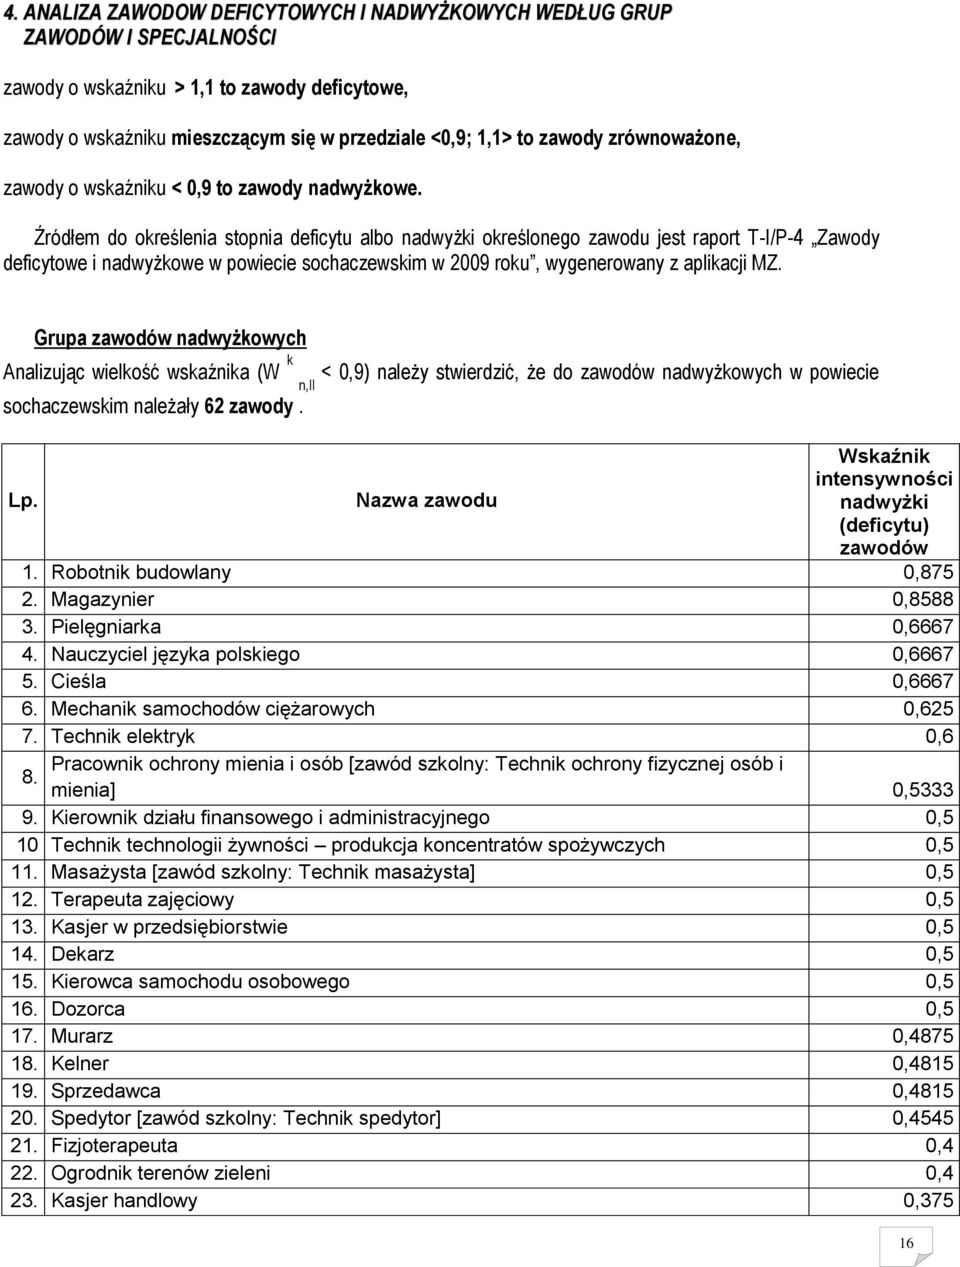 Źródłem do określenia stopnia deficytu albo nadwyżki określonego zawodu jest raport T-I/P-4 Zawody deficytowe i nadwyżkowe w powiecie sochaczewskim w 2009 roku, wygenerowany z aplikacji MZ.